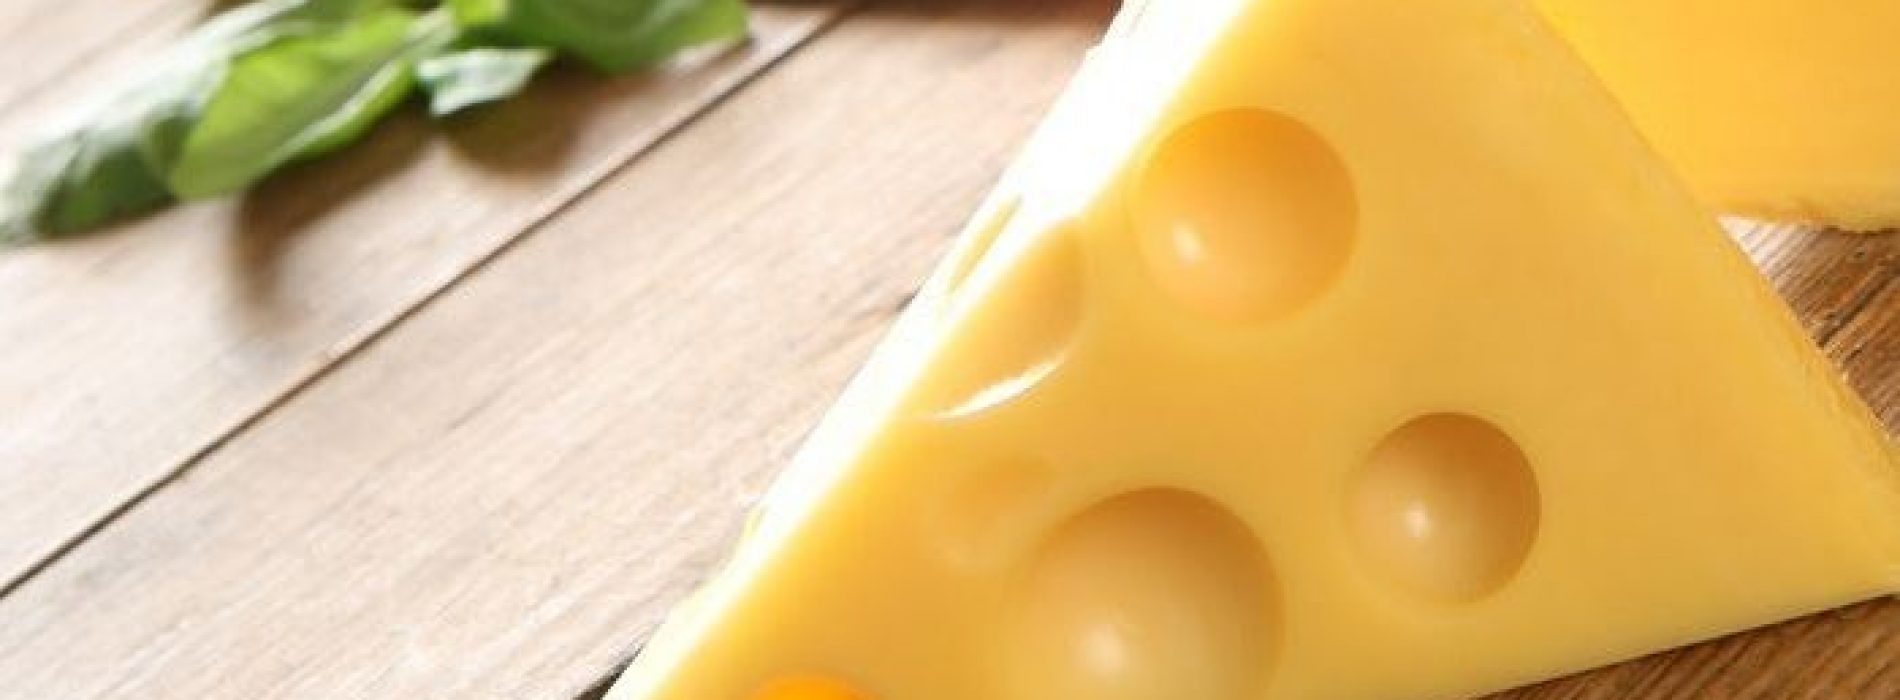 Goed nieuws: stofje in kaas kan mogelijk helpen tegen kanker